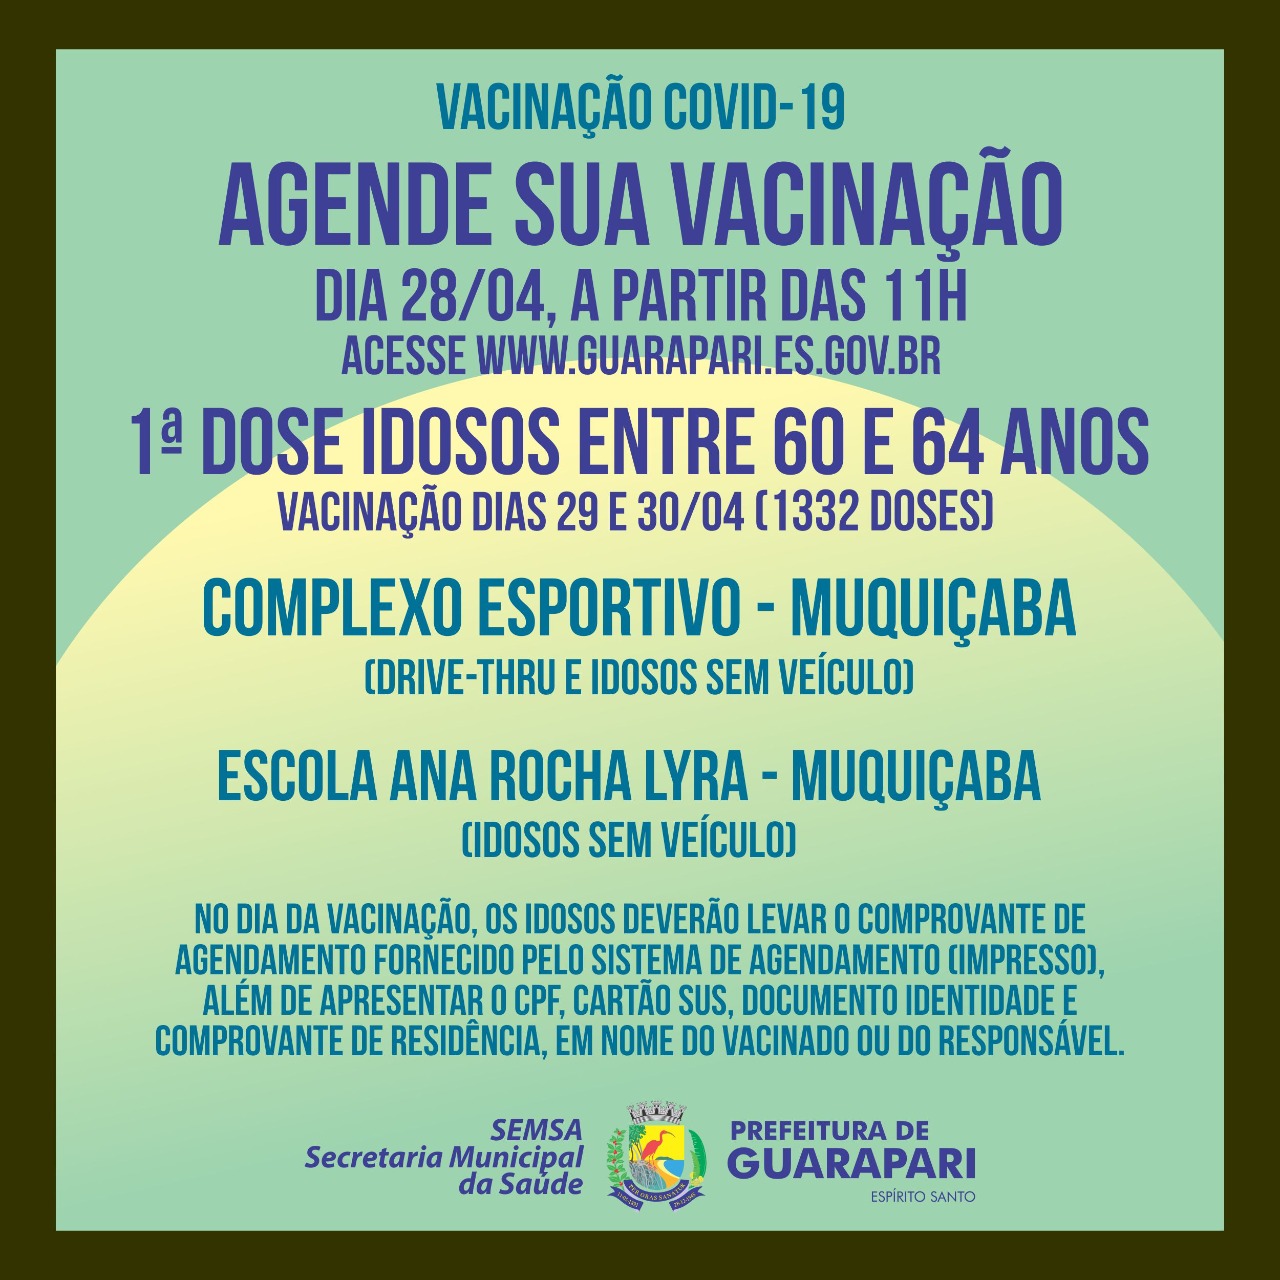 Covid-19: Prefeitura de Guarapari abre novo agendamento para vacinar idosos de 60 a 64 anos, nesta quarta-feira (28)